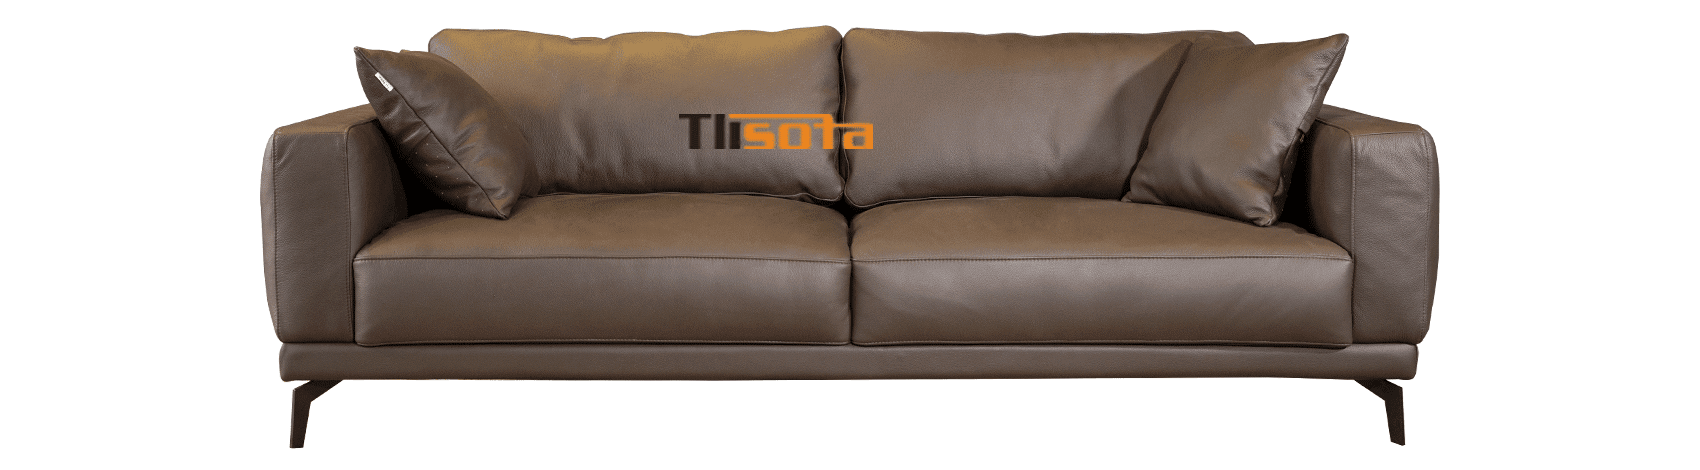 Sofa Sereno văng đôi - TLI